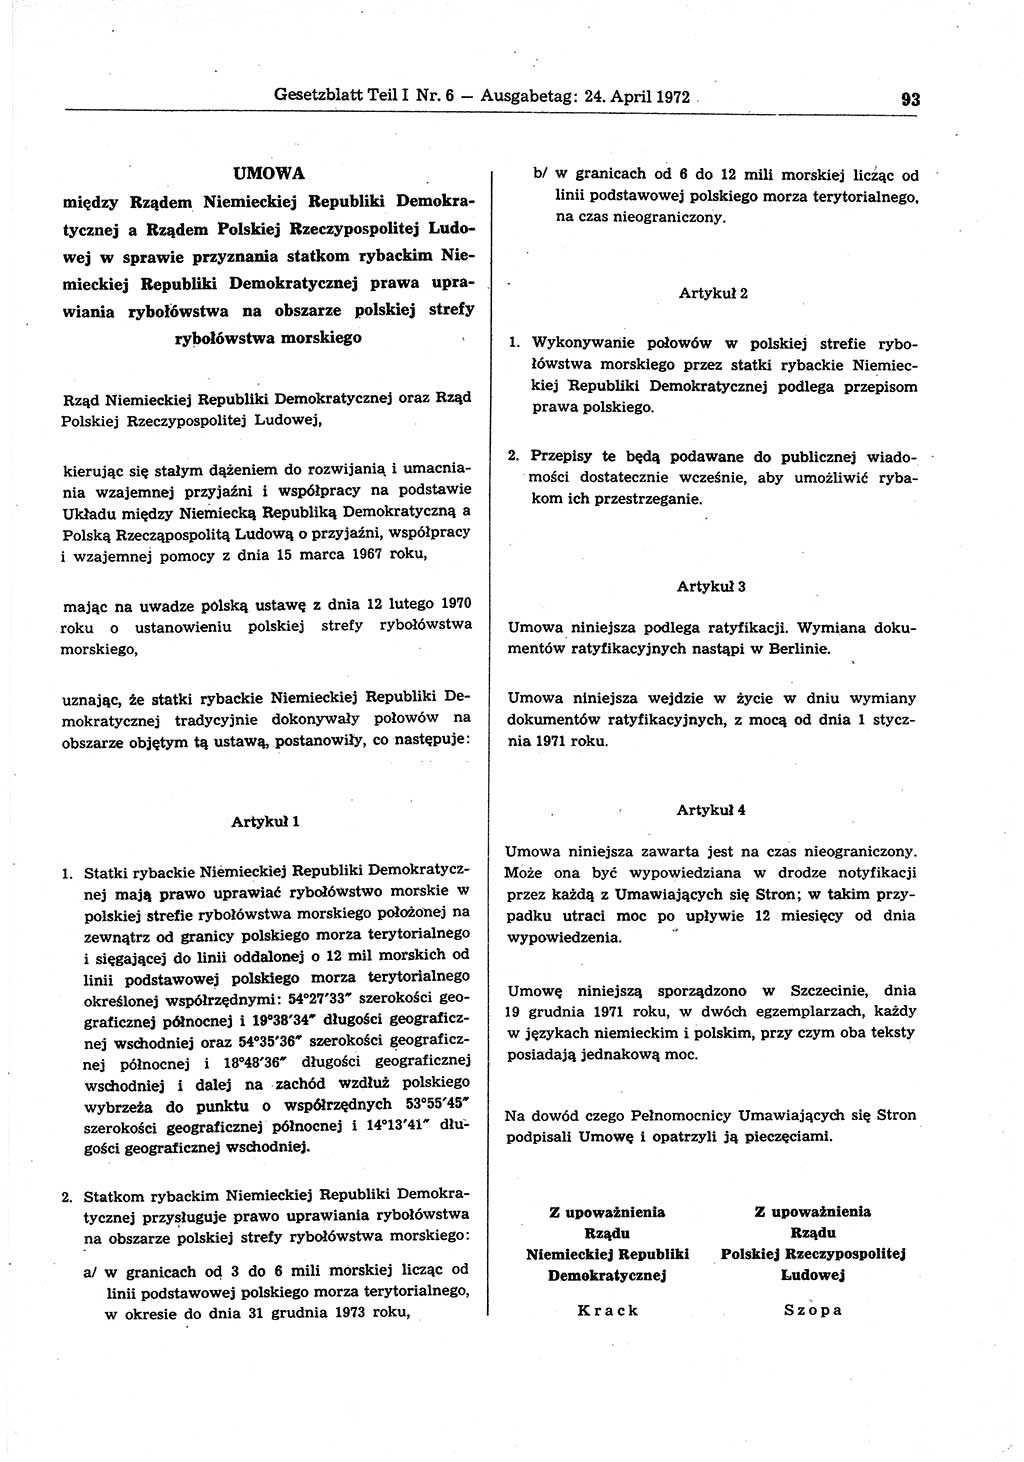 Gesetzblatt (GBl.) der Deutschen Demokratischen Republik (DDR) Teil Ⅰ 1972, Seite 93 (GBl. DDR Ⅰ 1972, S. 93)